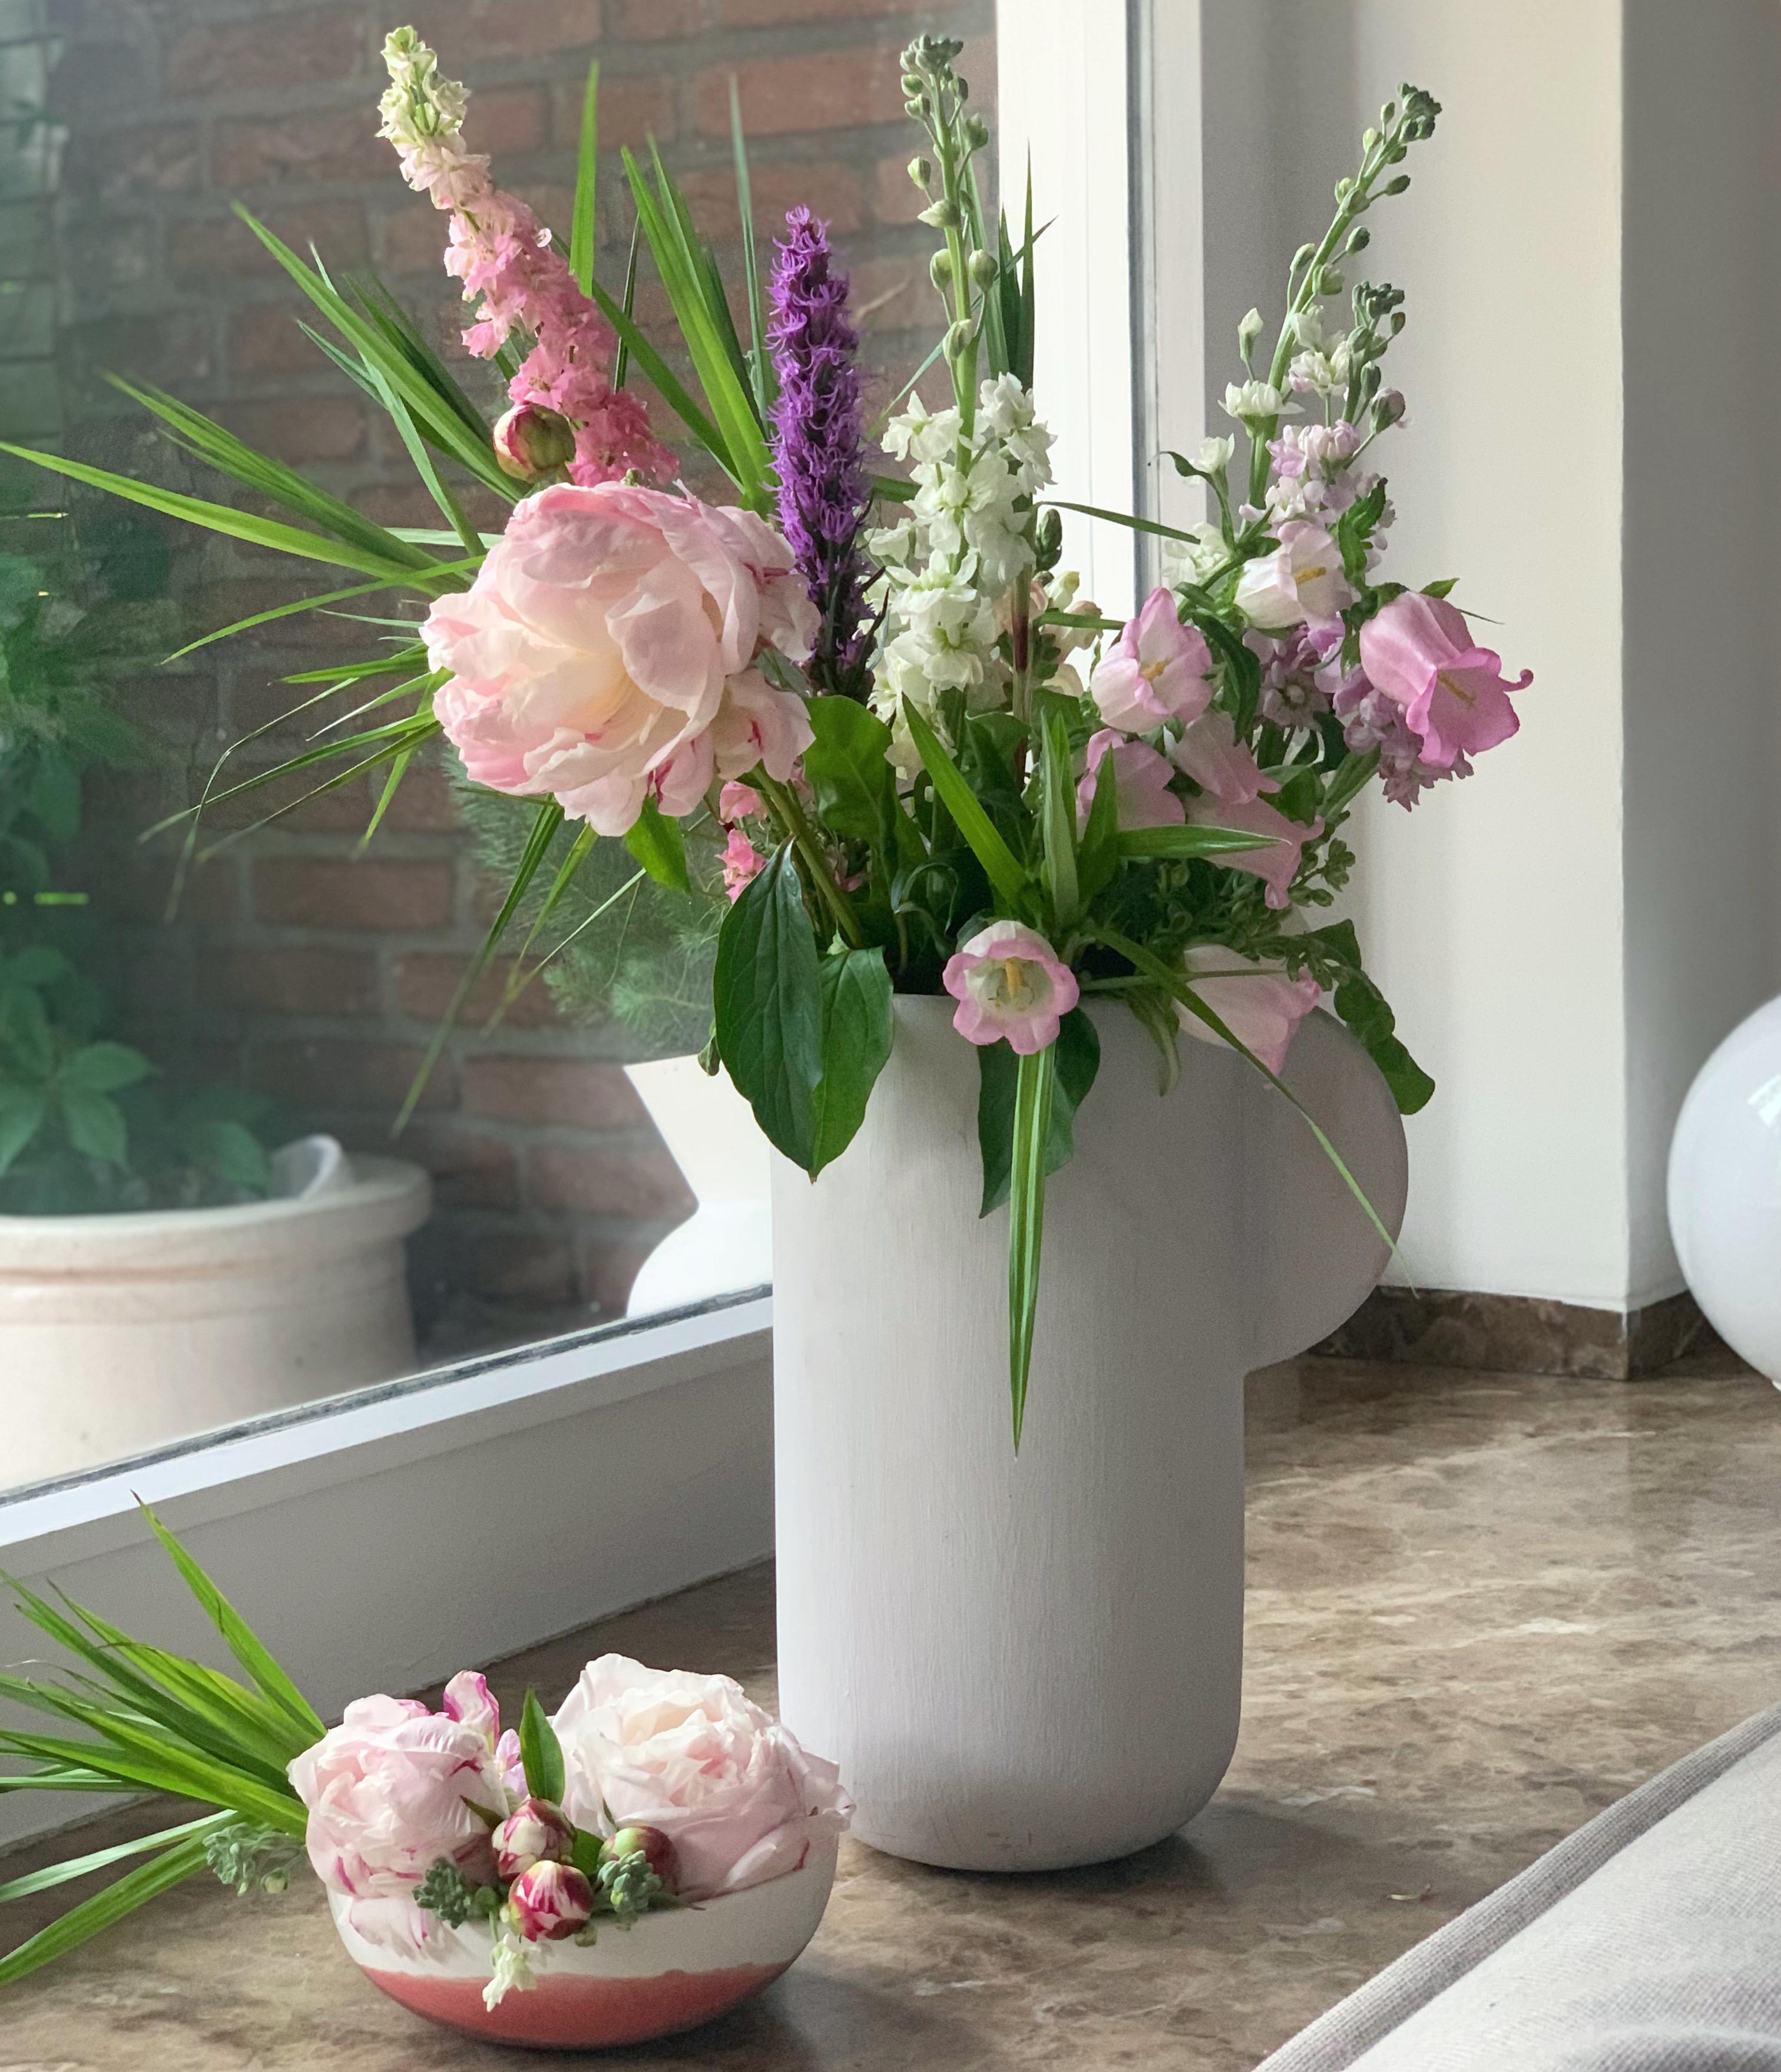 Flowers- in der Vase + in der Schale🌸🌿💛
#freshflowers #blumenstrauß #blumen #freshflowerfriday #sommerblumen 